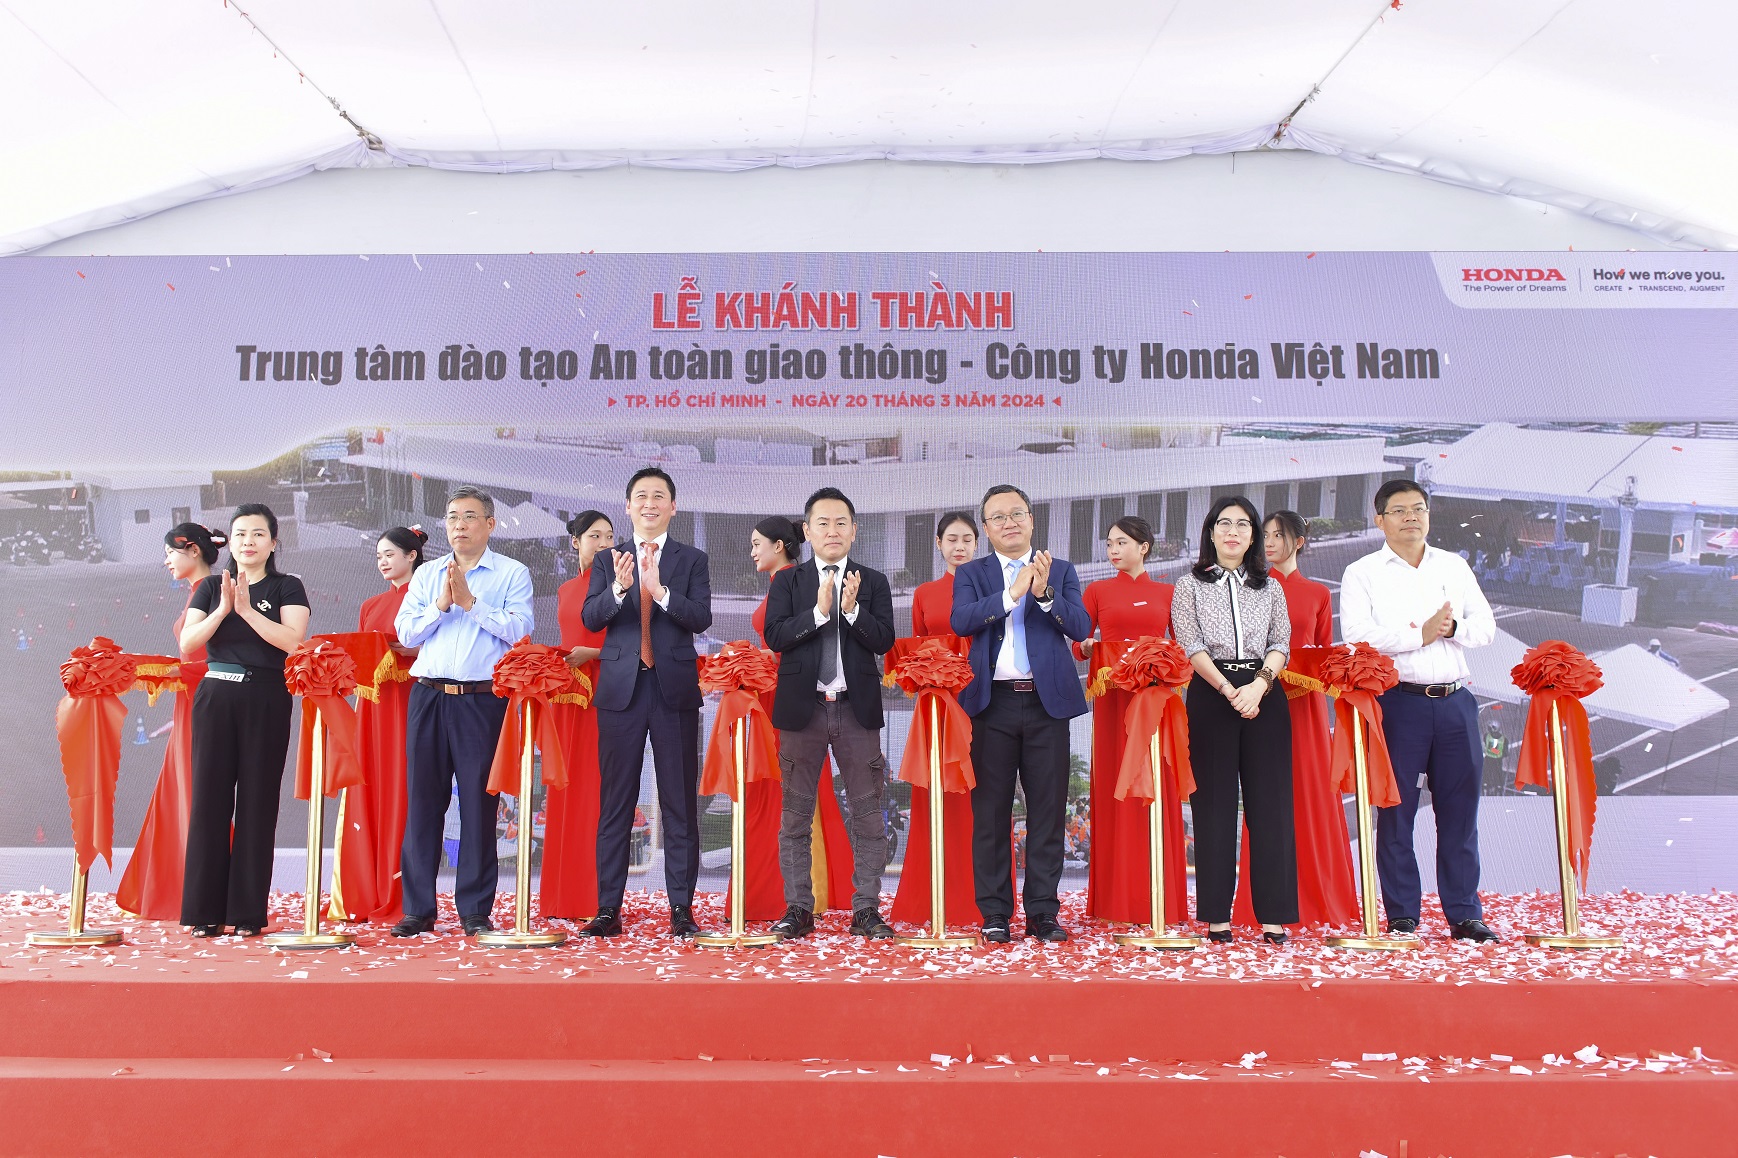 Honda Việt Nam khánh thành Trung tâm đào tạo ATGT thứ hai tại TP.HCM 3-cac-vi-dai-bieu-cat-bang-khanh-thanh-trung-tam-dao-tao-an-toan-giao-thong-thu-hai-tai-khu-vuc-phia-nam.jpg